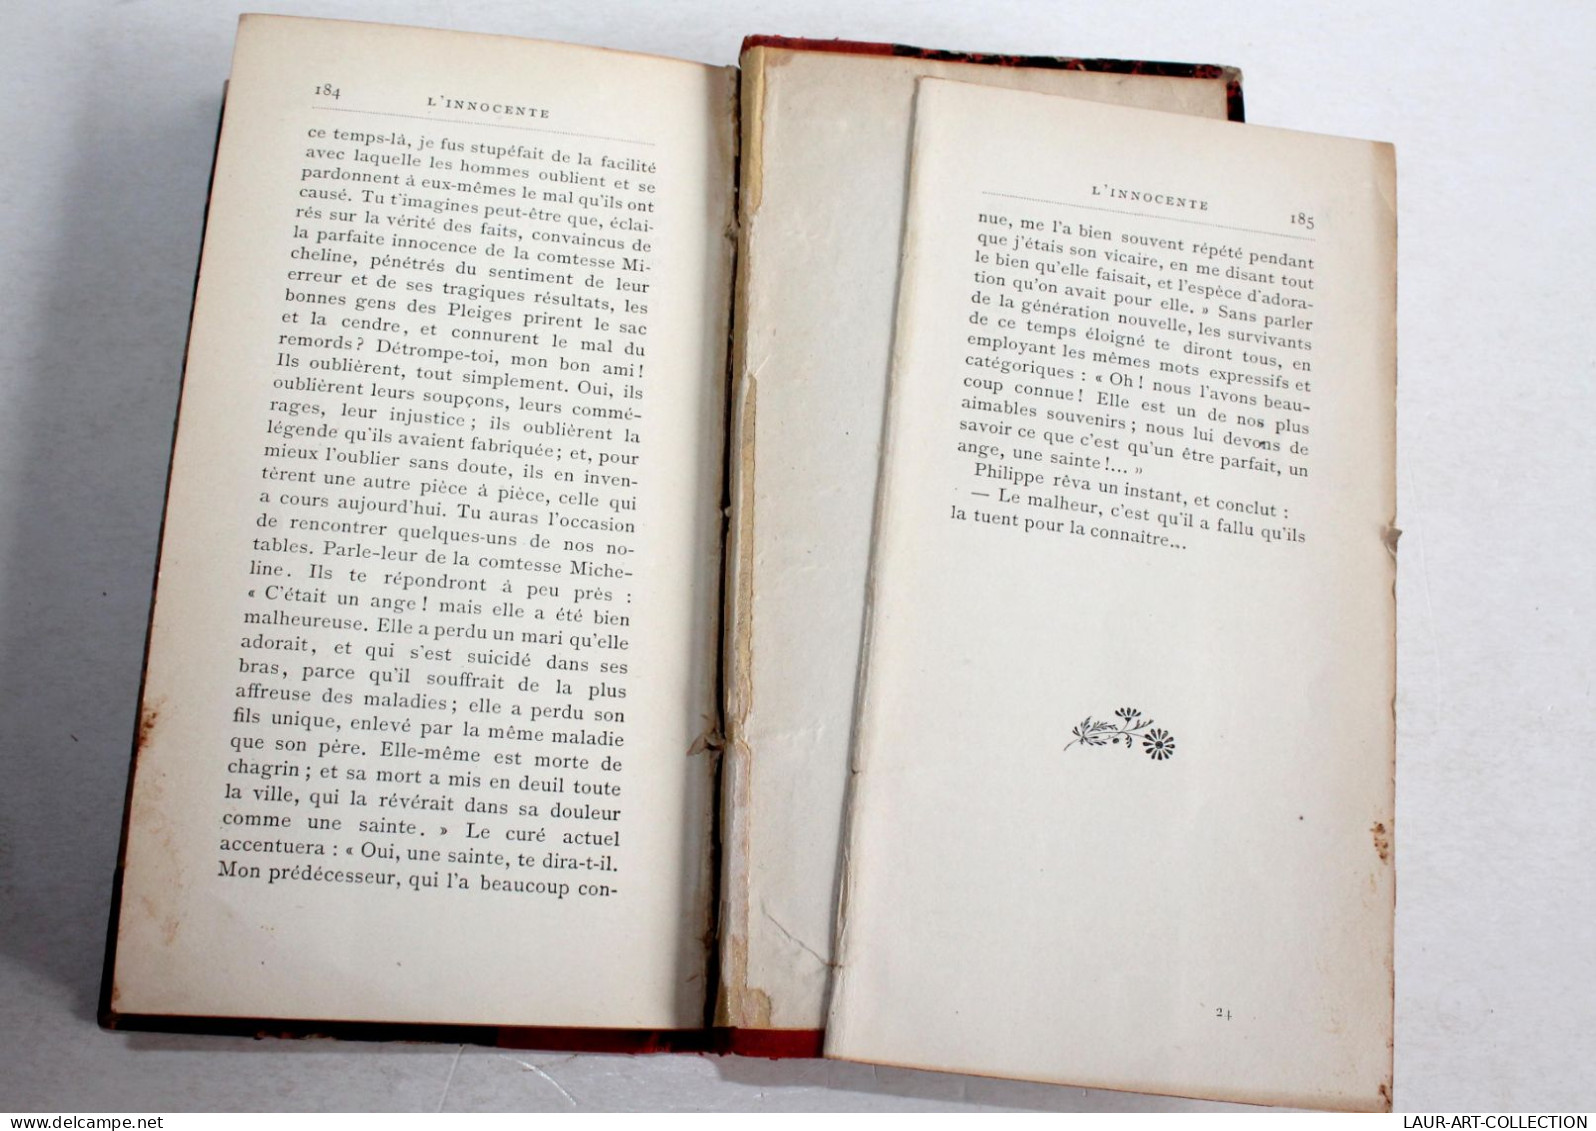 L'INNOCENTE Par EDOUARD ROD, ILLUSTRATION De L. KOWALSKY 1897 OLLENDORFF EDITEUR / ANCIEN LIVRE XIXe SIECLE (2204.34) - 1801-1900